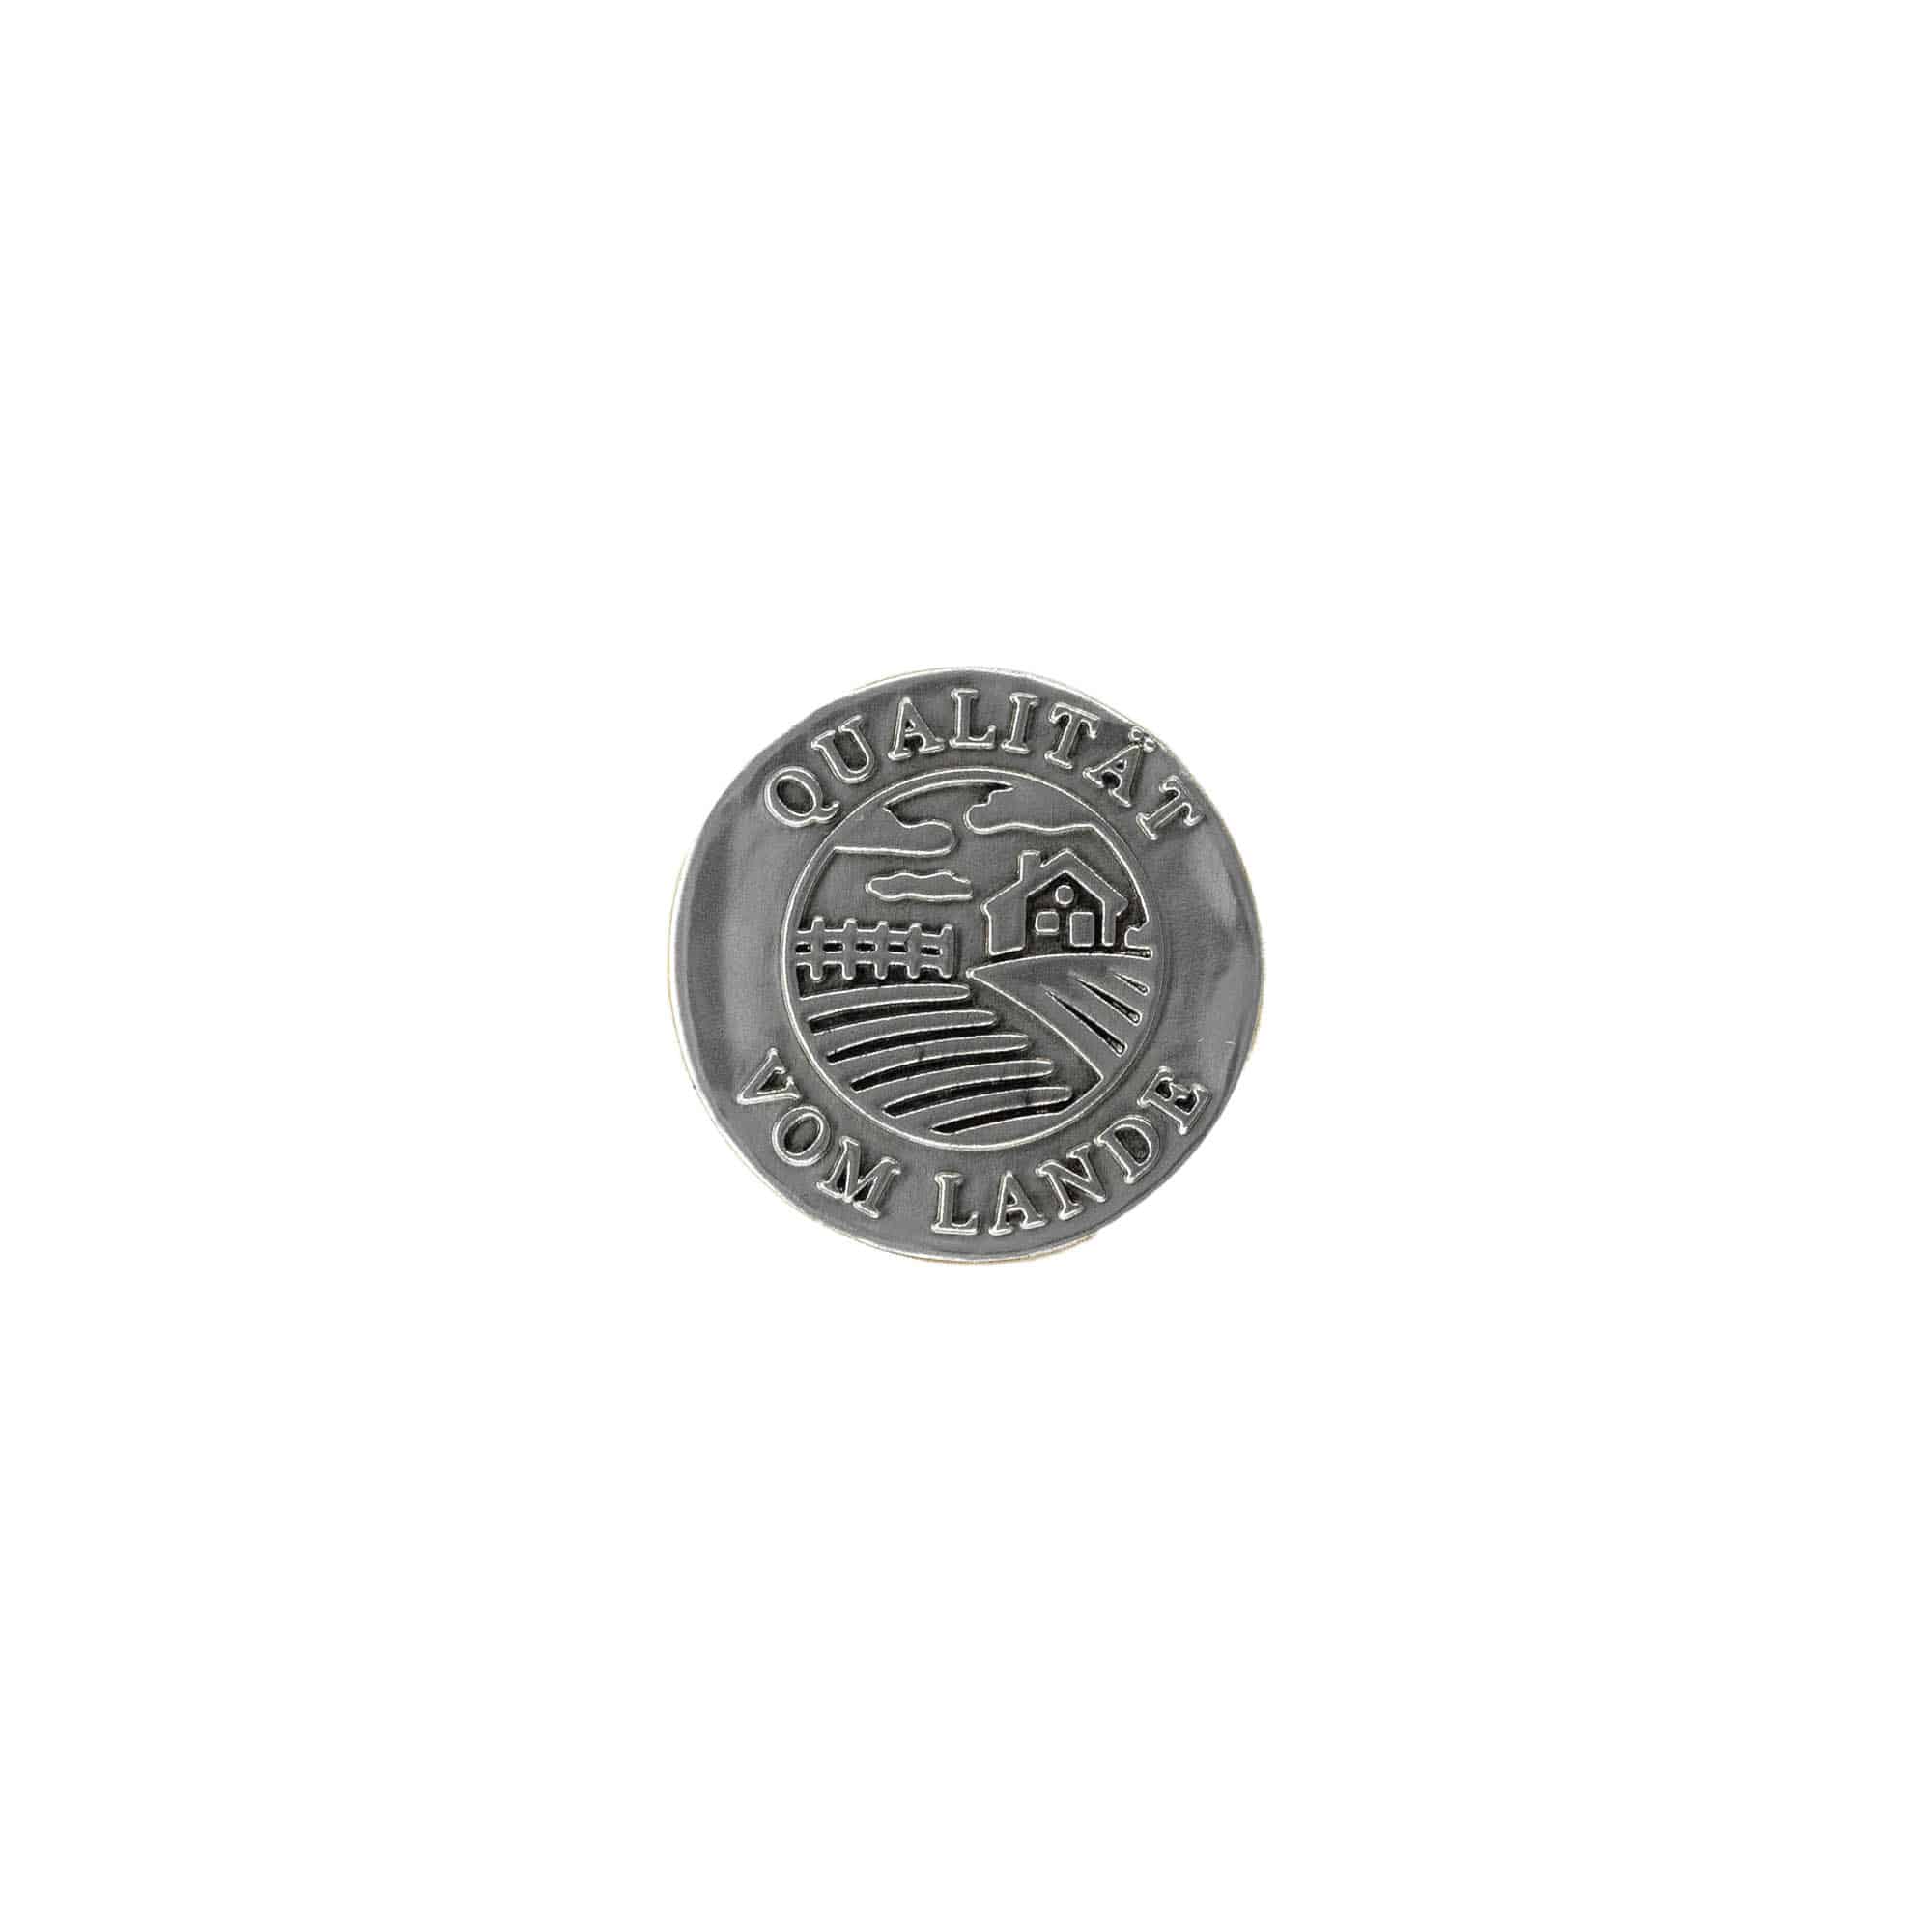 Etykieta cynowa 'Jakość z obszarów wiejskich', okrągła, metal, kolor srebrny